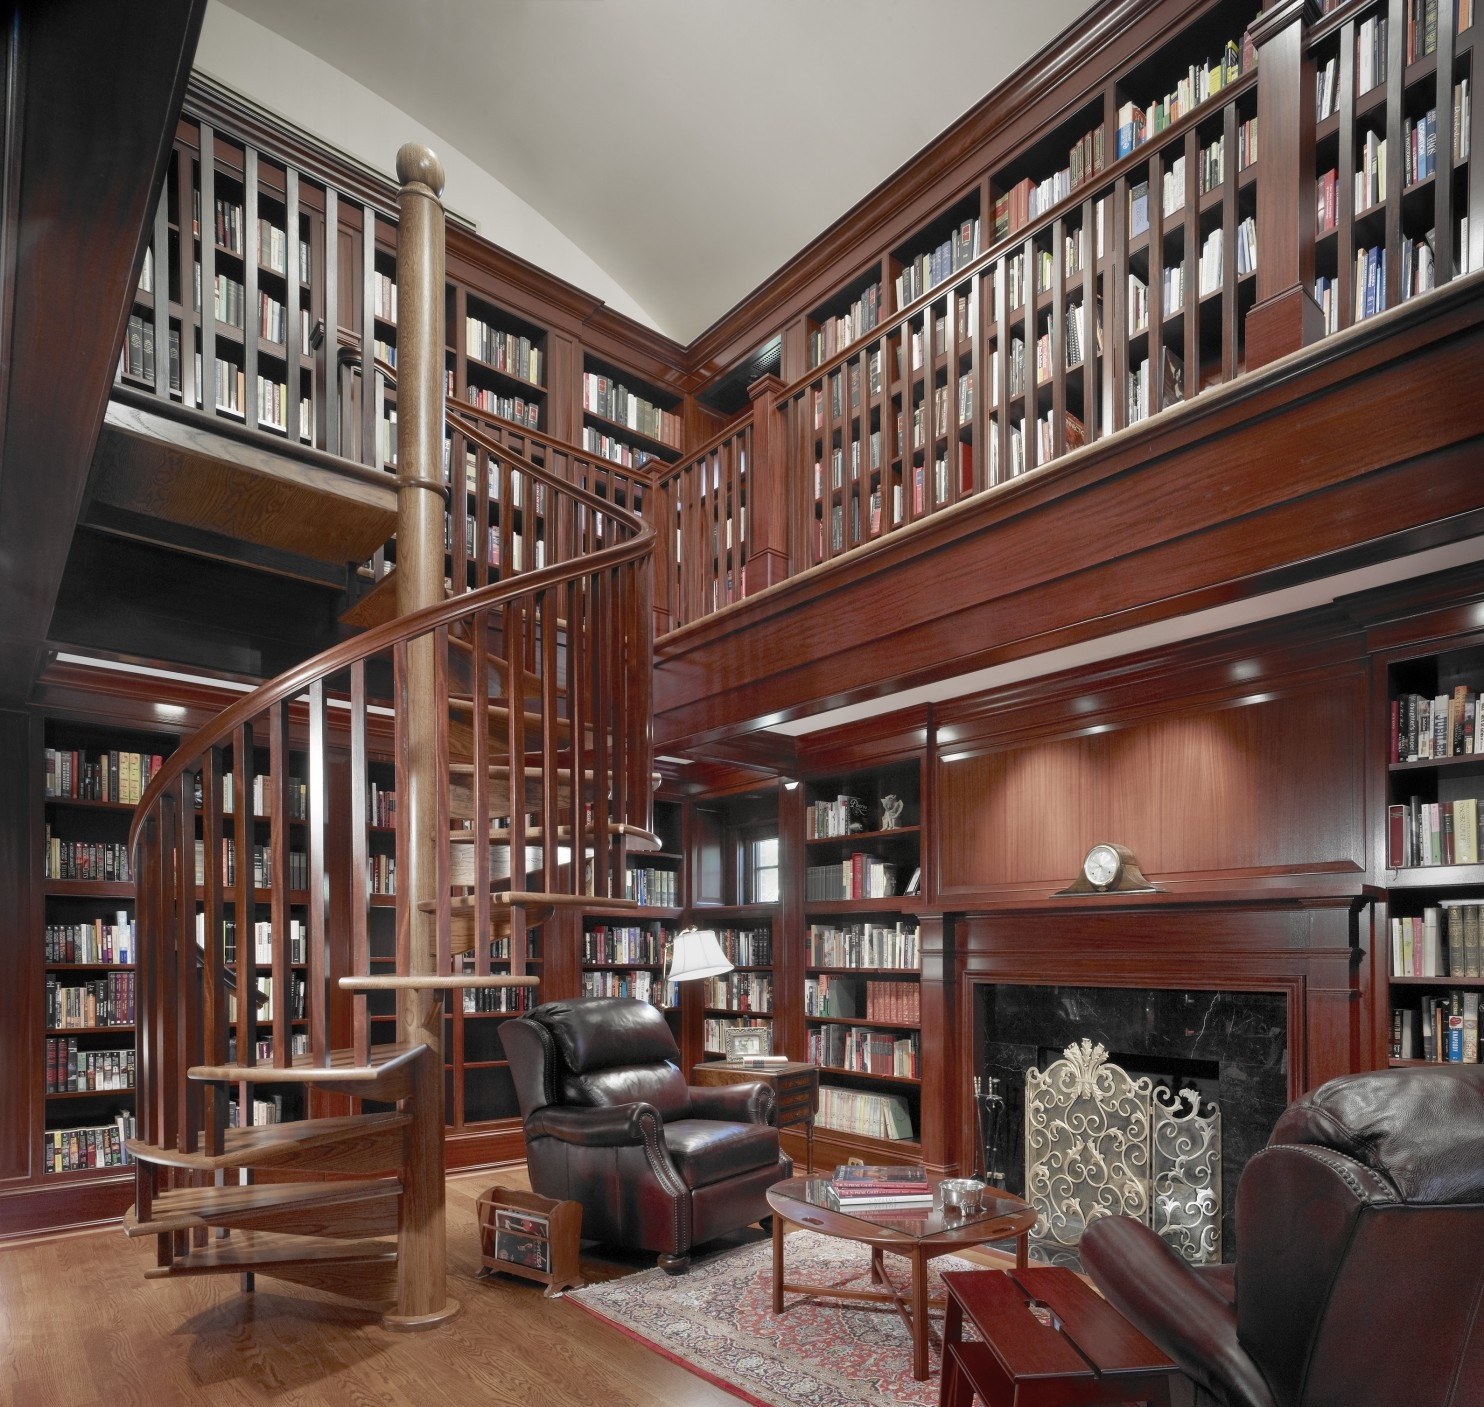 3d home библиотеки. Библиотека в доме. Интерьер библиотеки. Библиотека с высокими потолками. Домашняя библиотека интерьер.